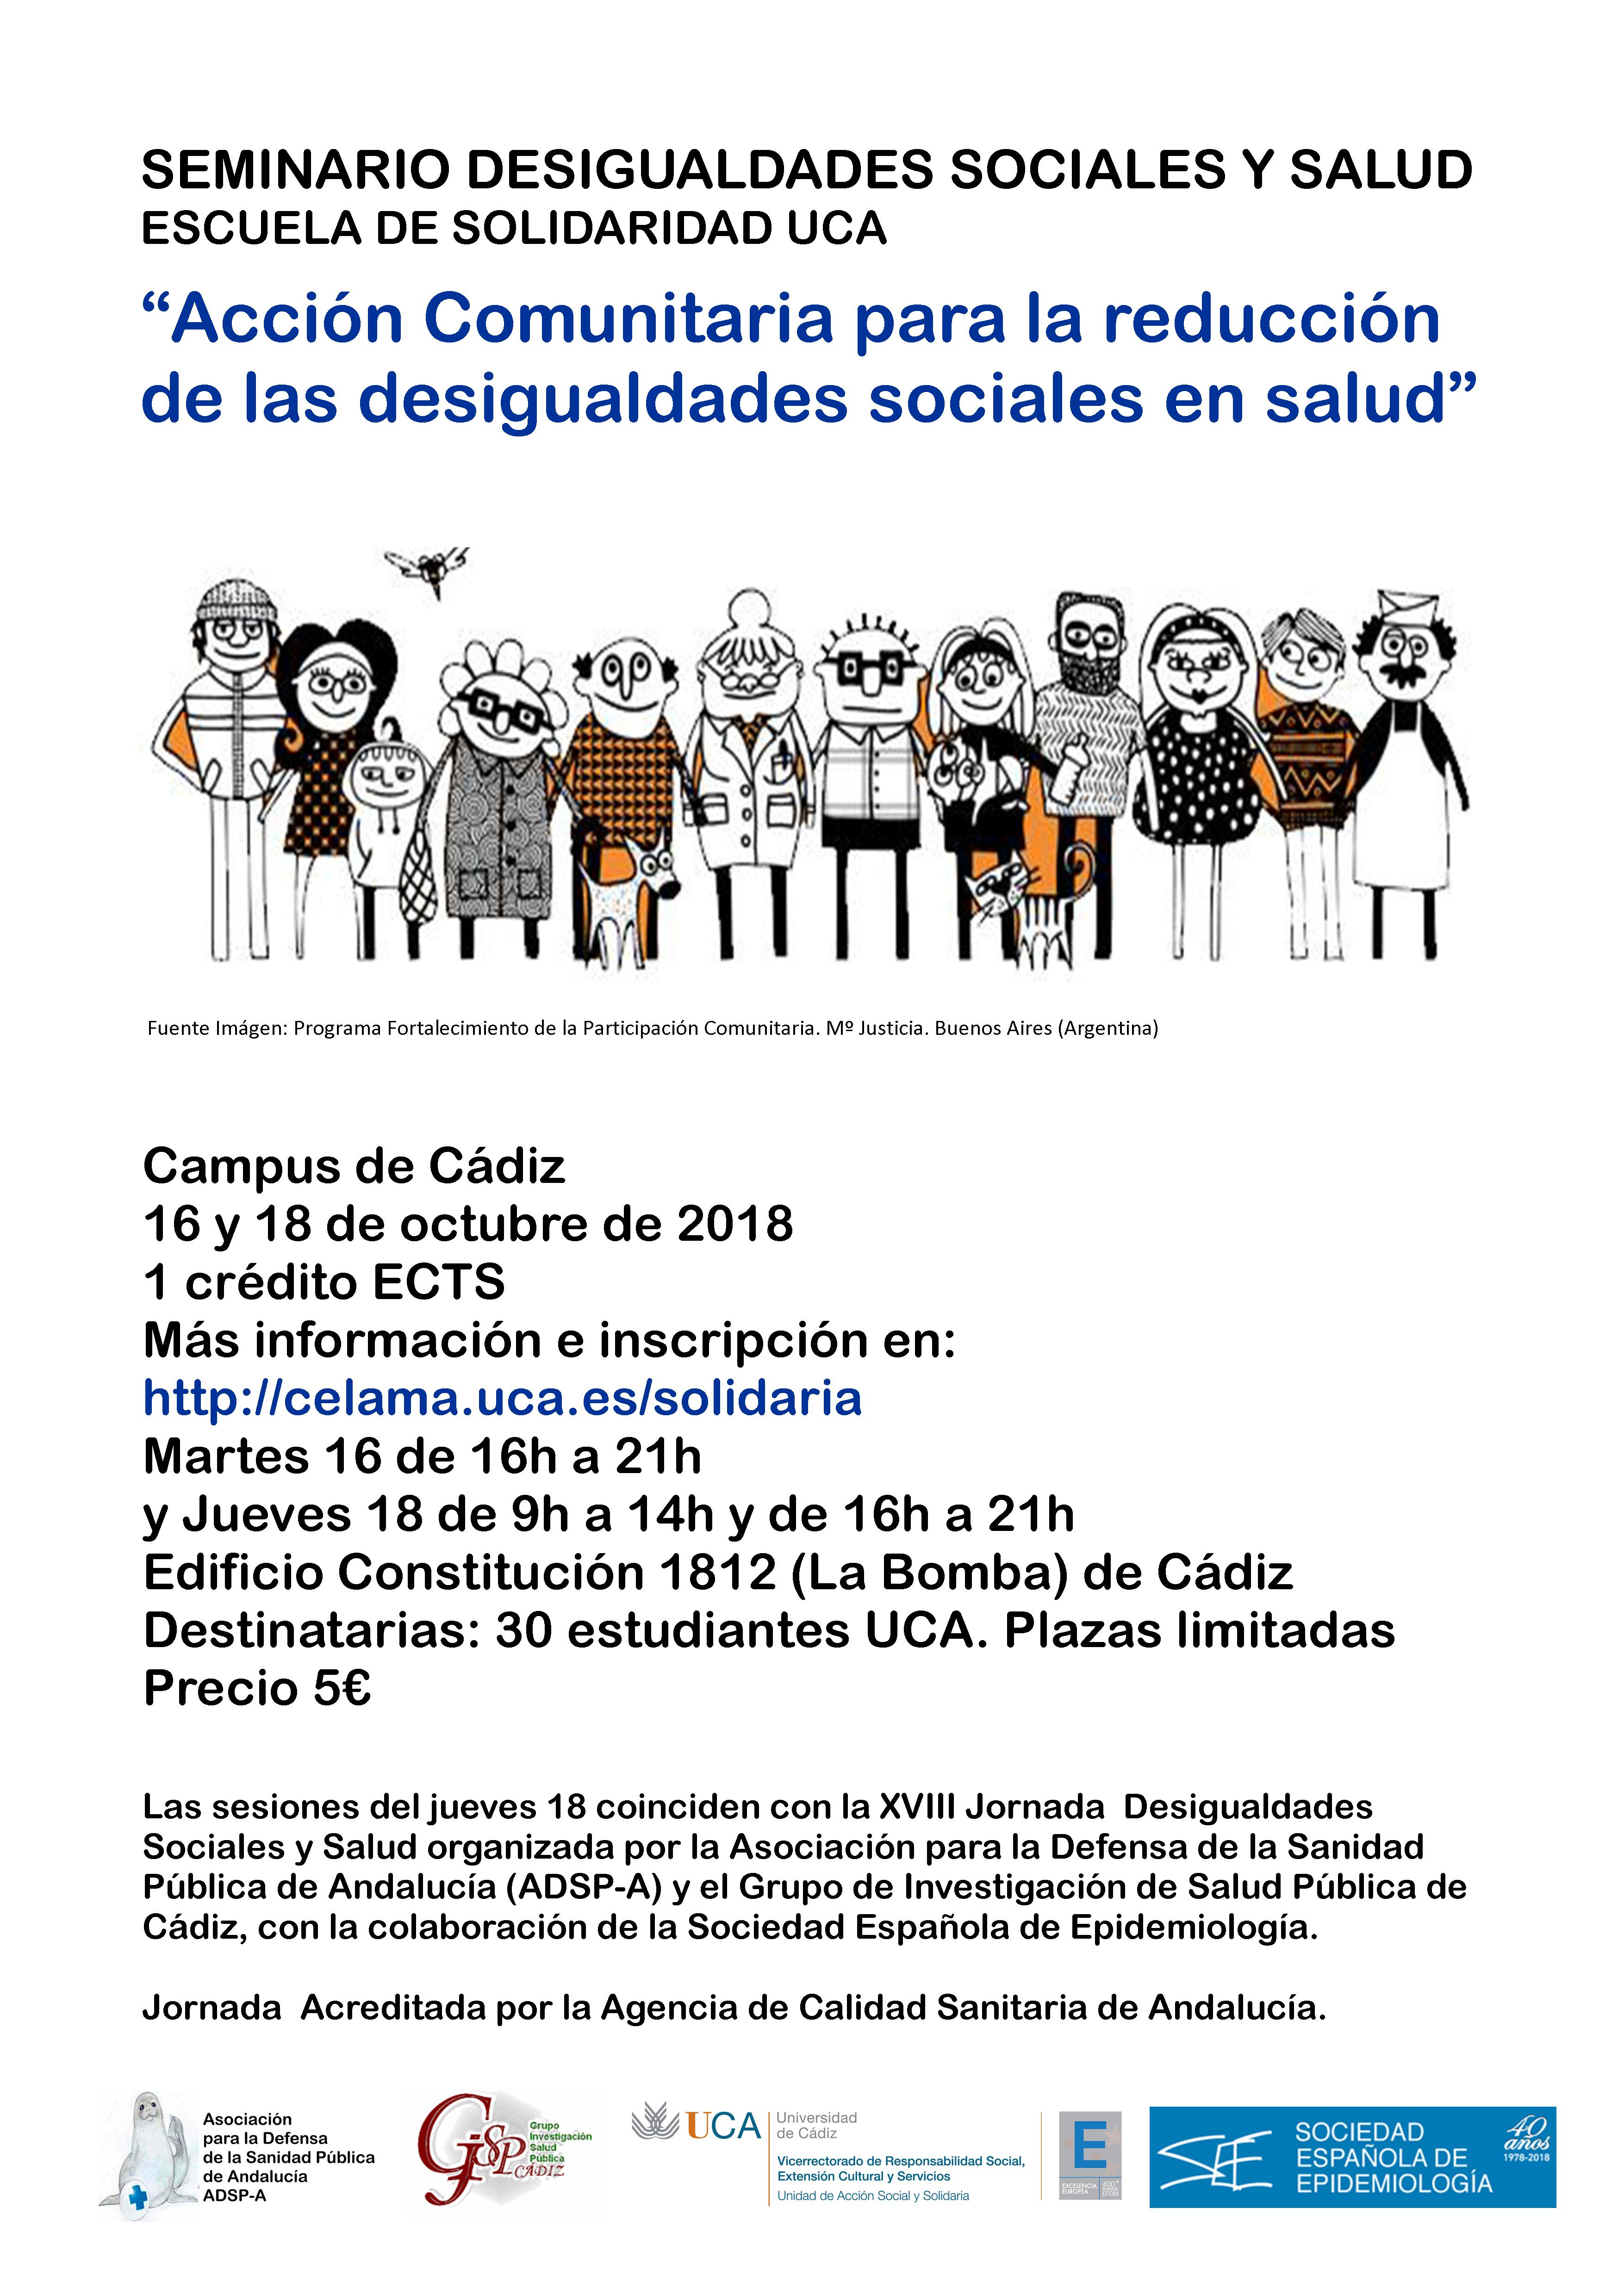 Seminario Desigualdades Sociales y Salud. Campus de Cádiz. 16 y 18 de octubre. Escuela de Solidaridad UCA